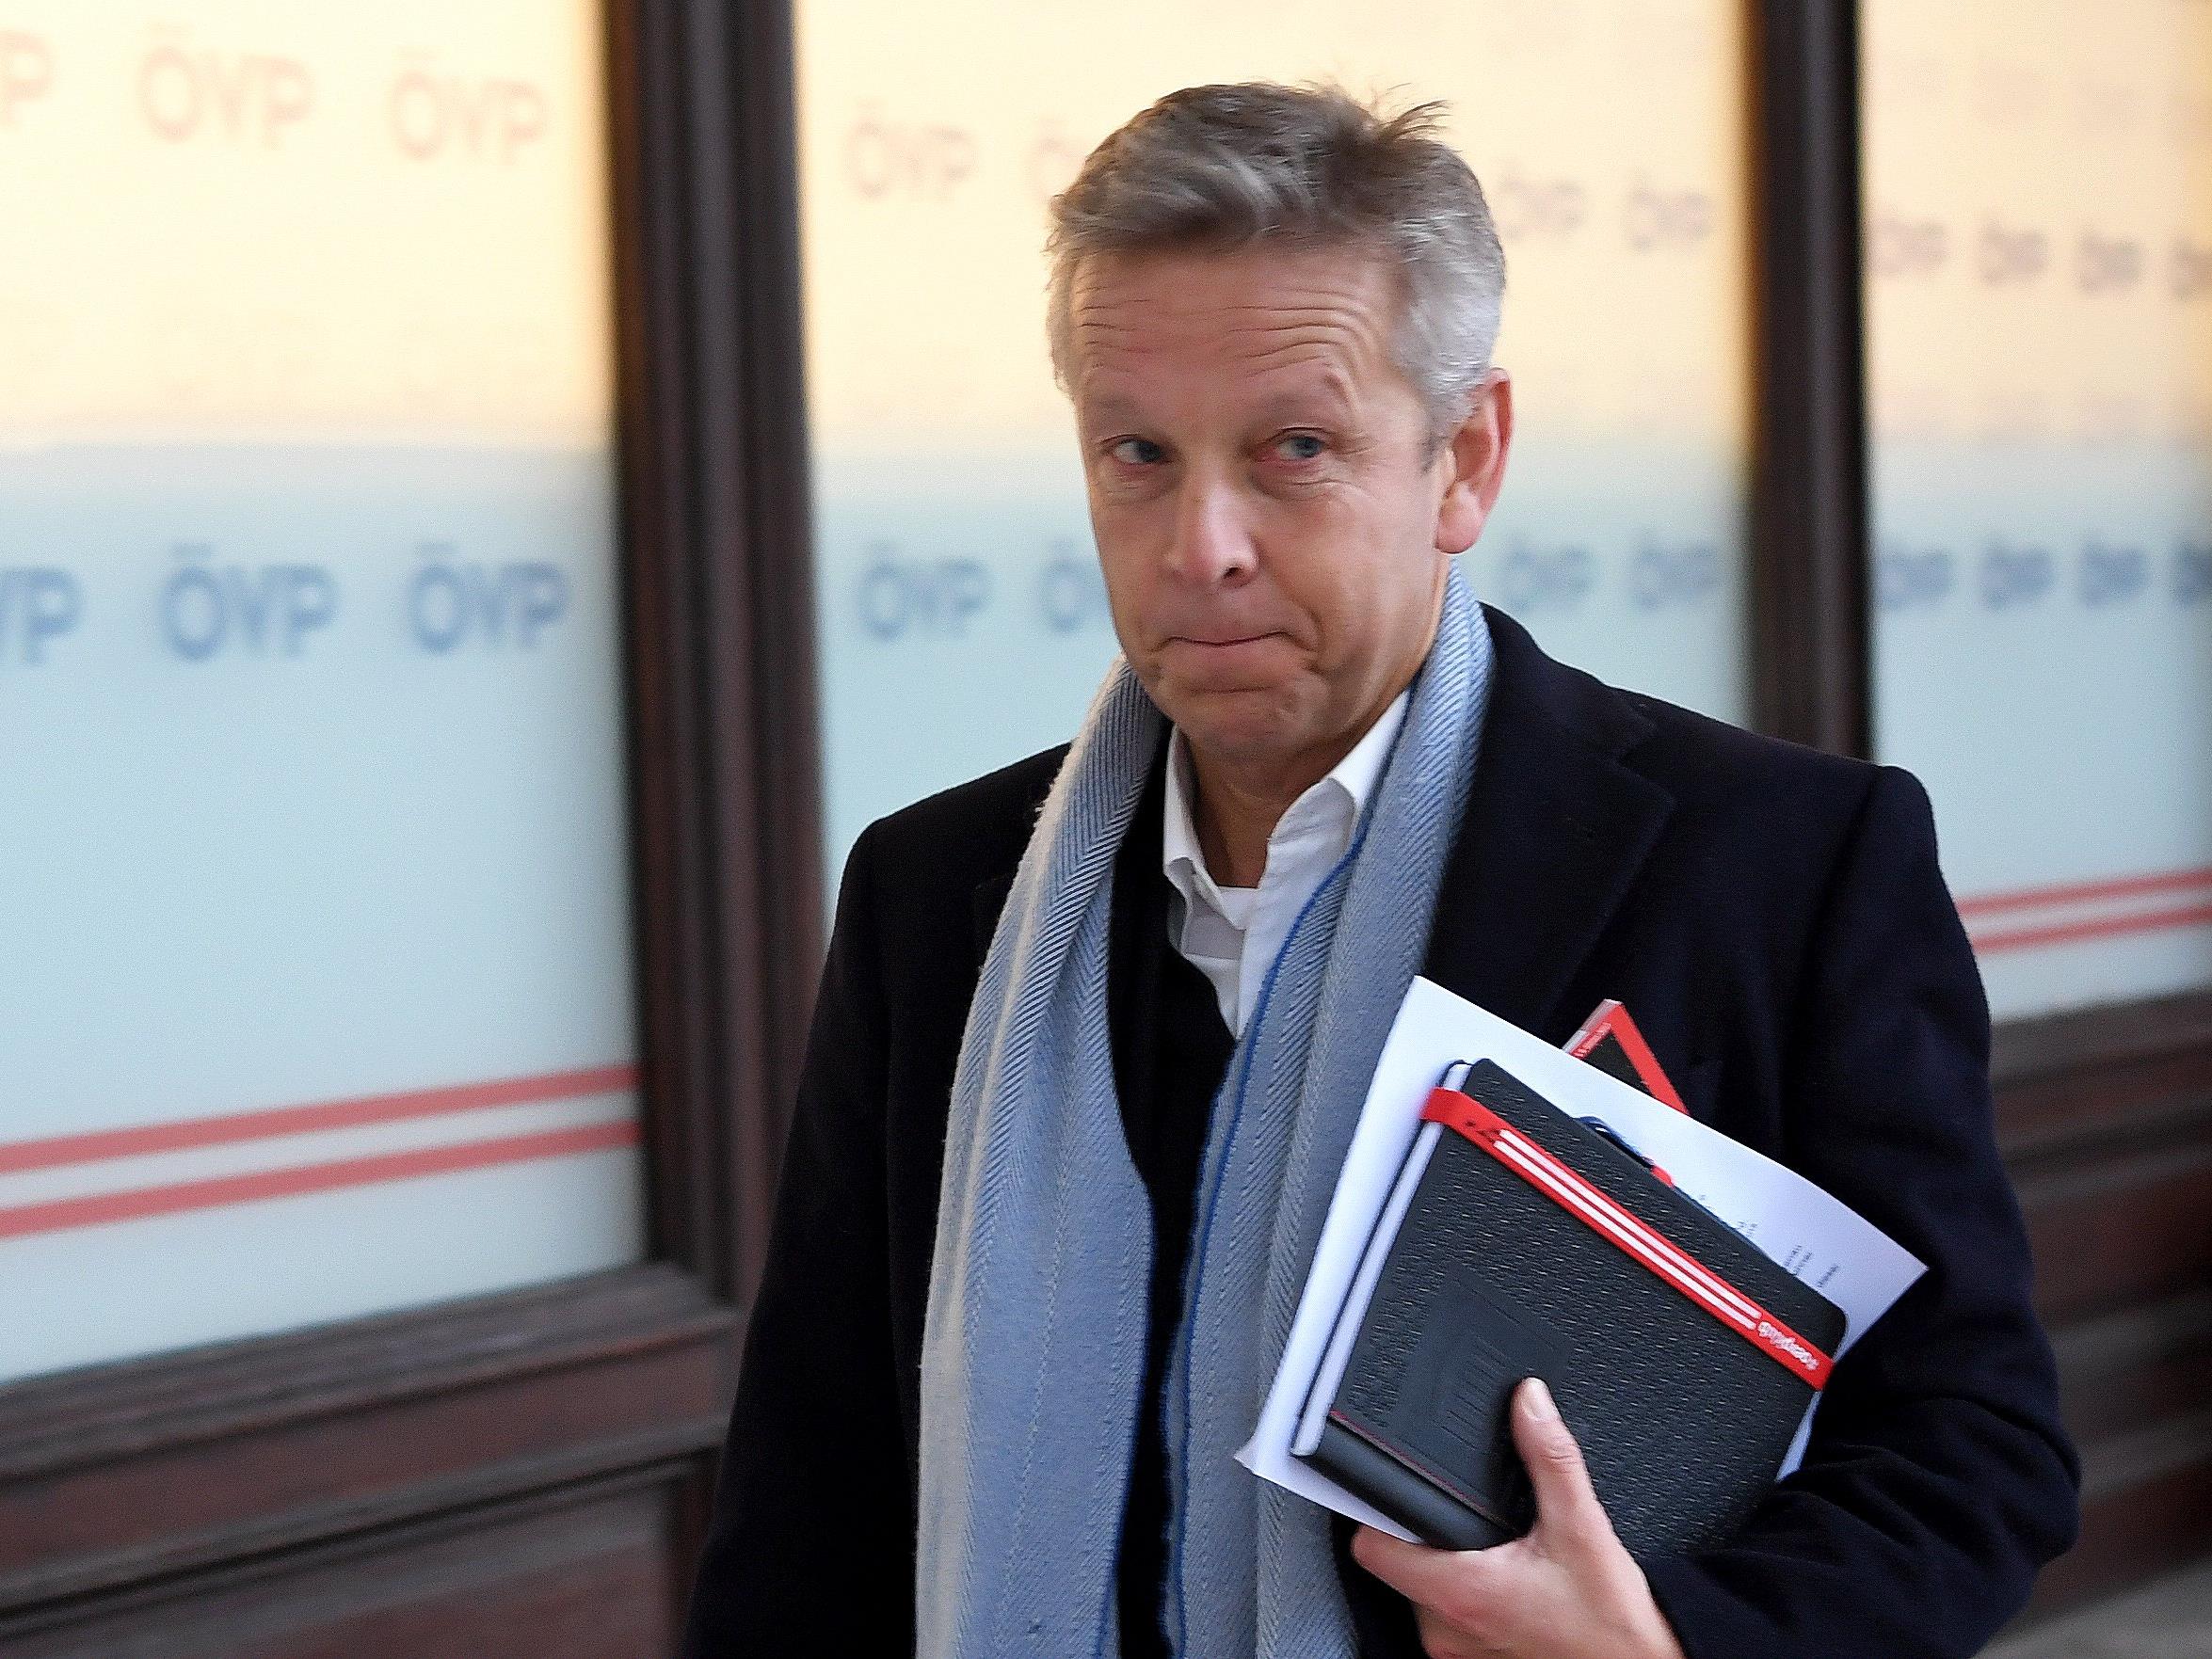 Das Verfahren gegen ÖVP-Klubchef Reinhold Lopatka wurde eingestellt